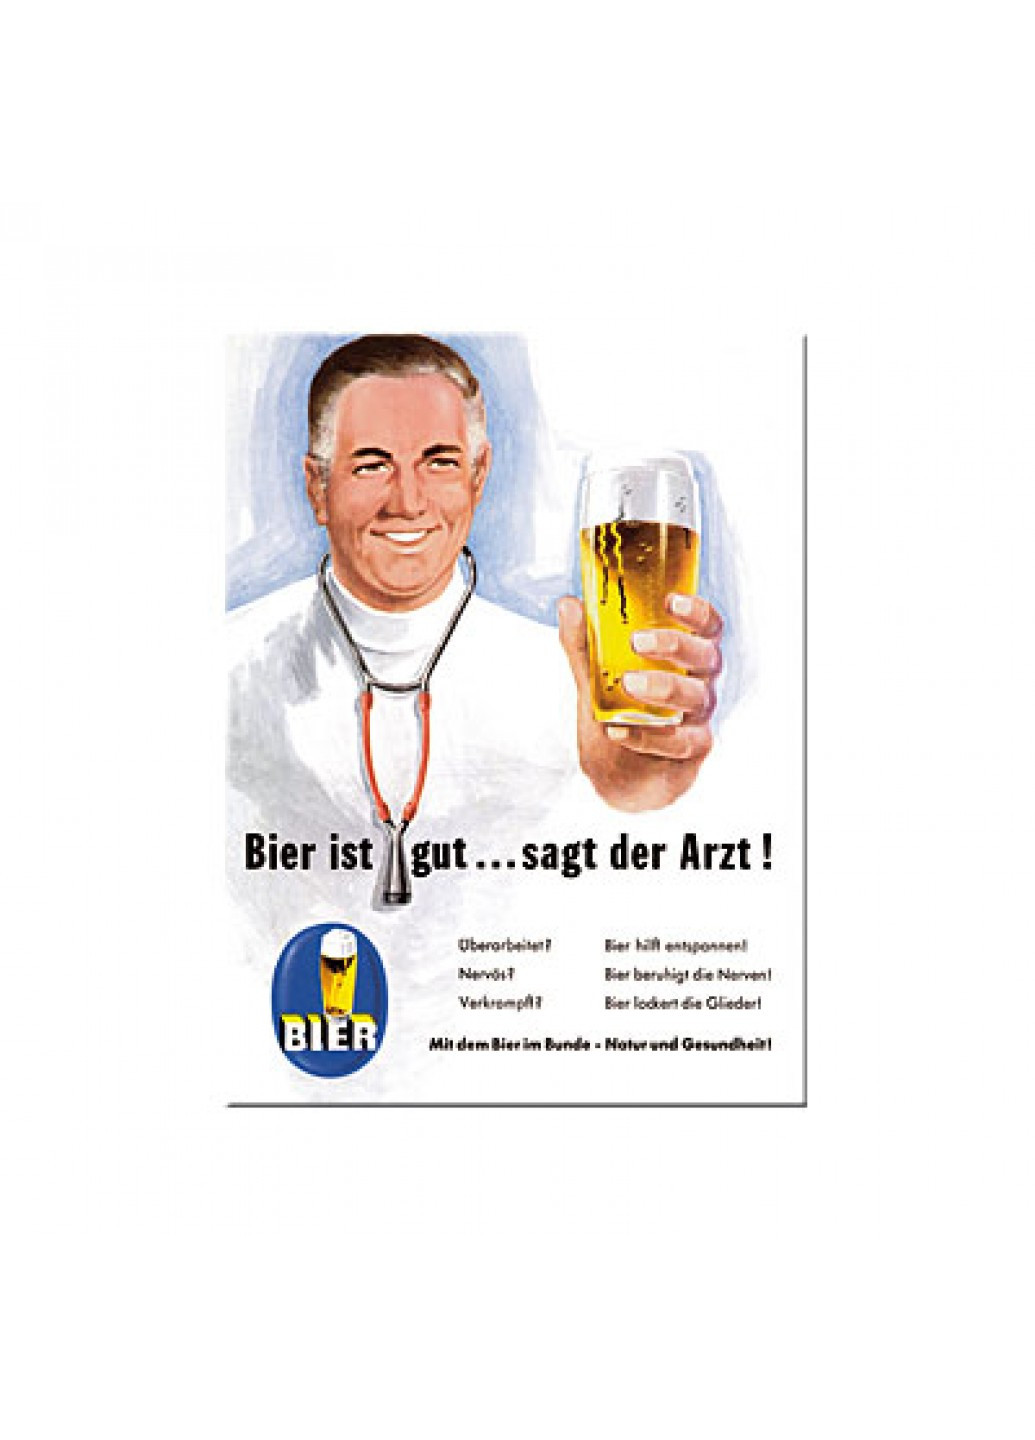 Магніт 8x6 см "Bier und Spirituosen ist gut. Sagt der Arzt" (14114) Nostalgic Art (215853600)